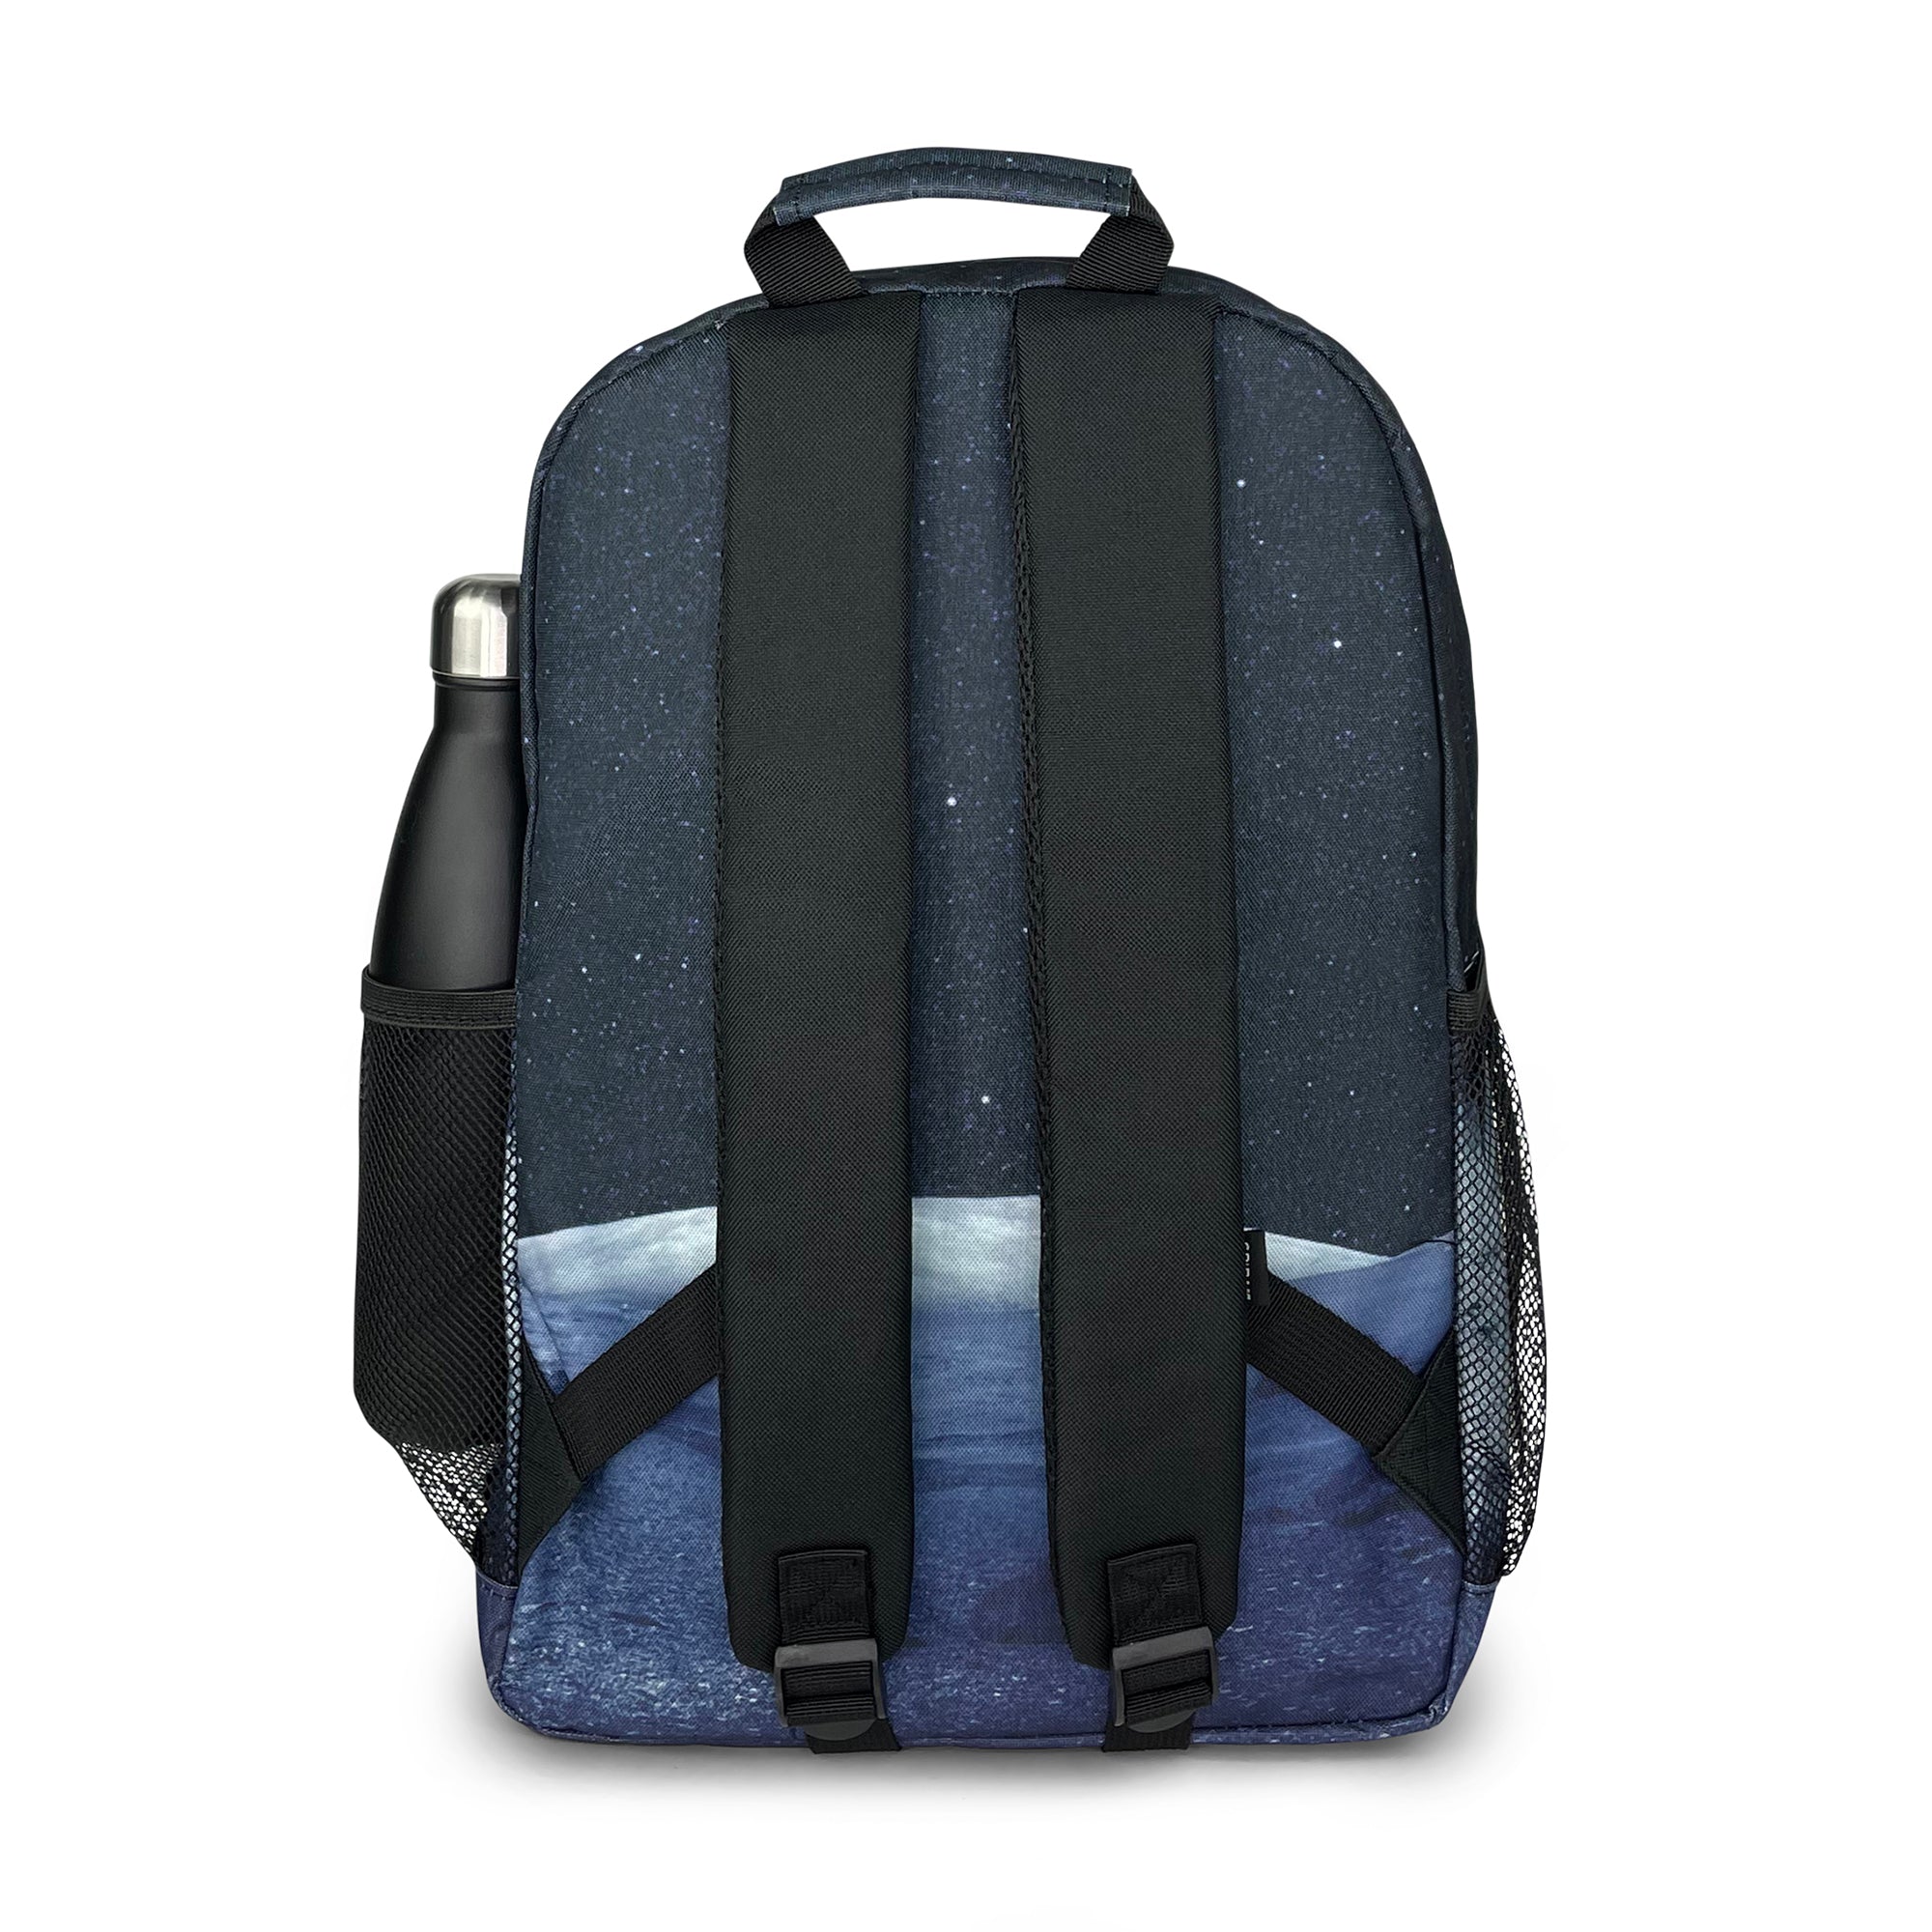 OG Classic Backpack-Backpack-Spiral-Lunar-SchoolBagsAndStuff